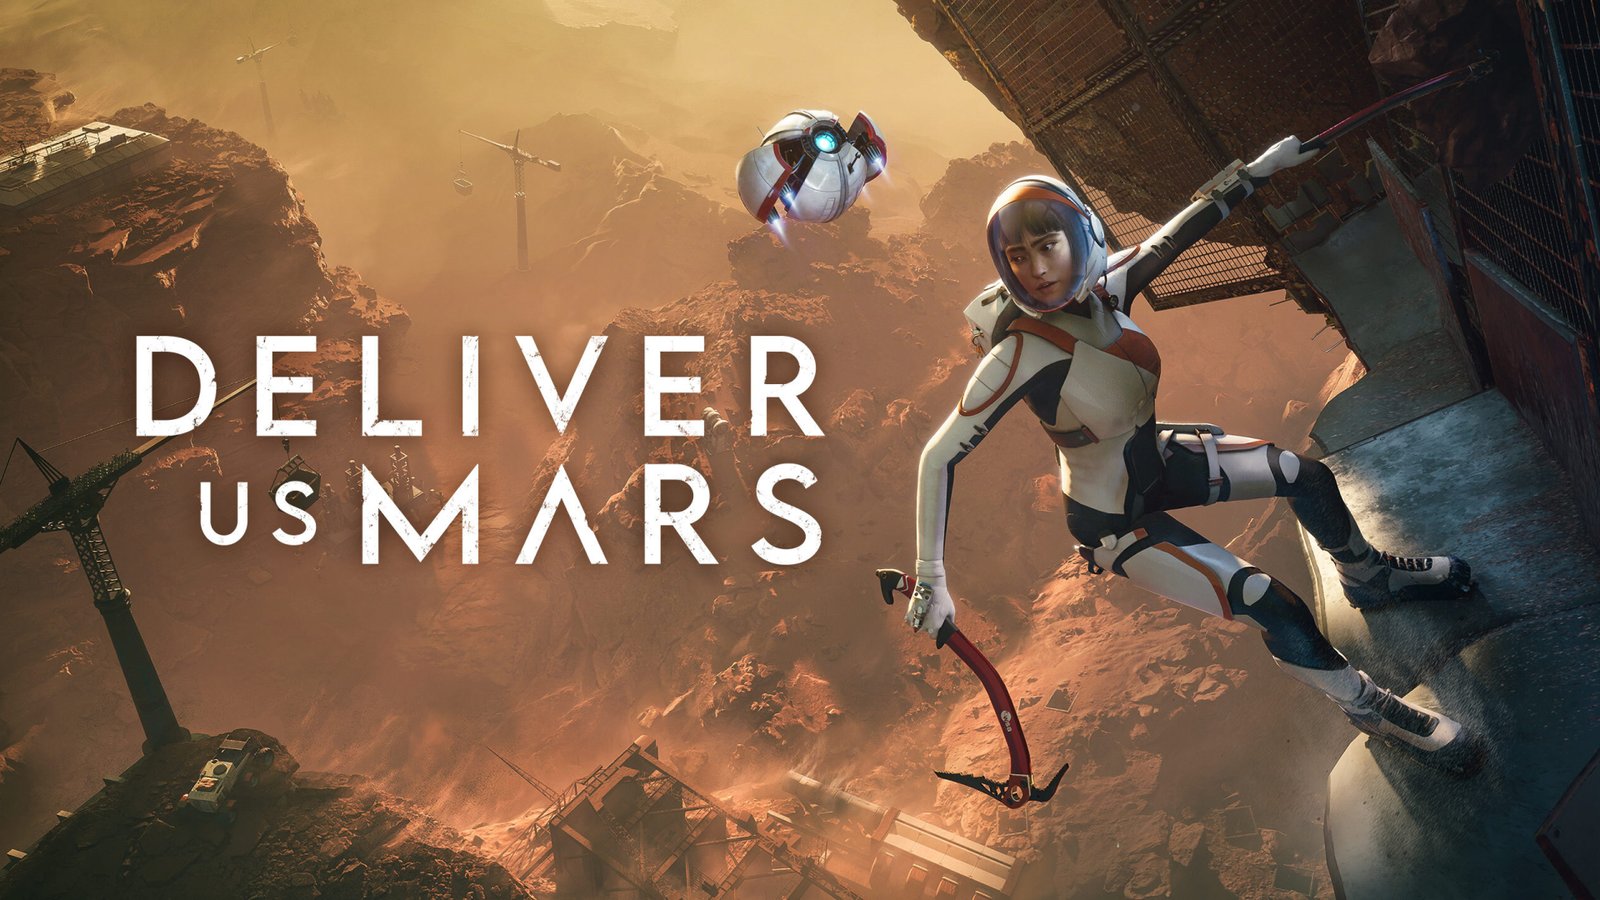 لعبة Deliver Us Mars متوفرة بشكل مجاني حاليًا على متجر Epic Games